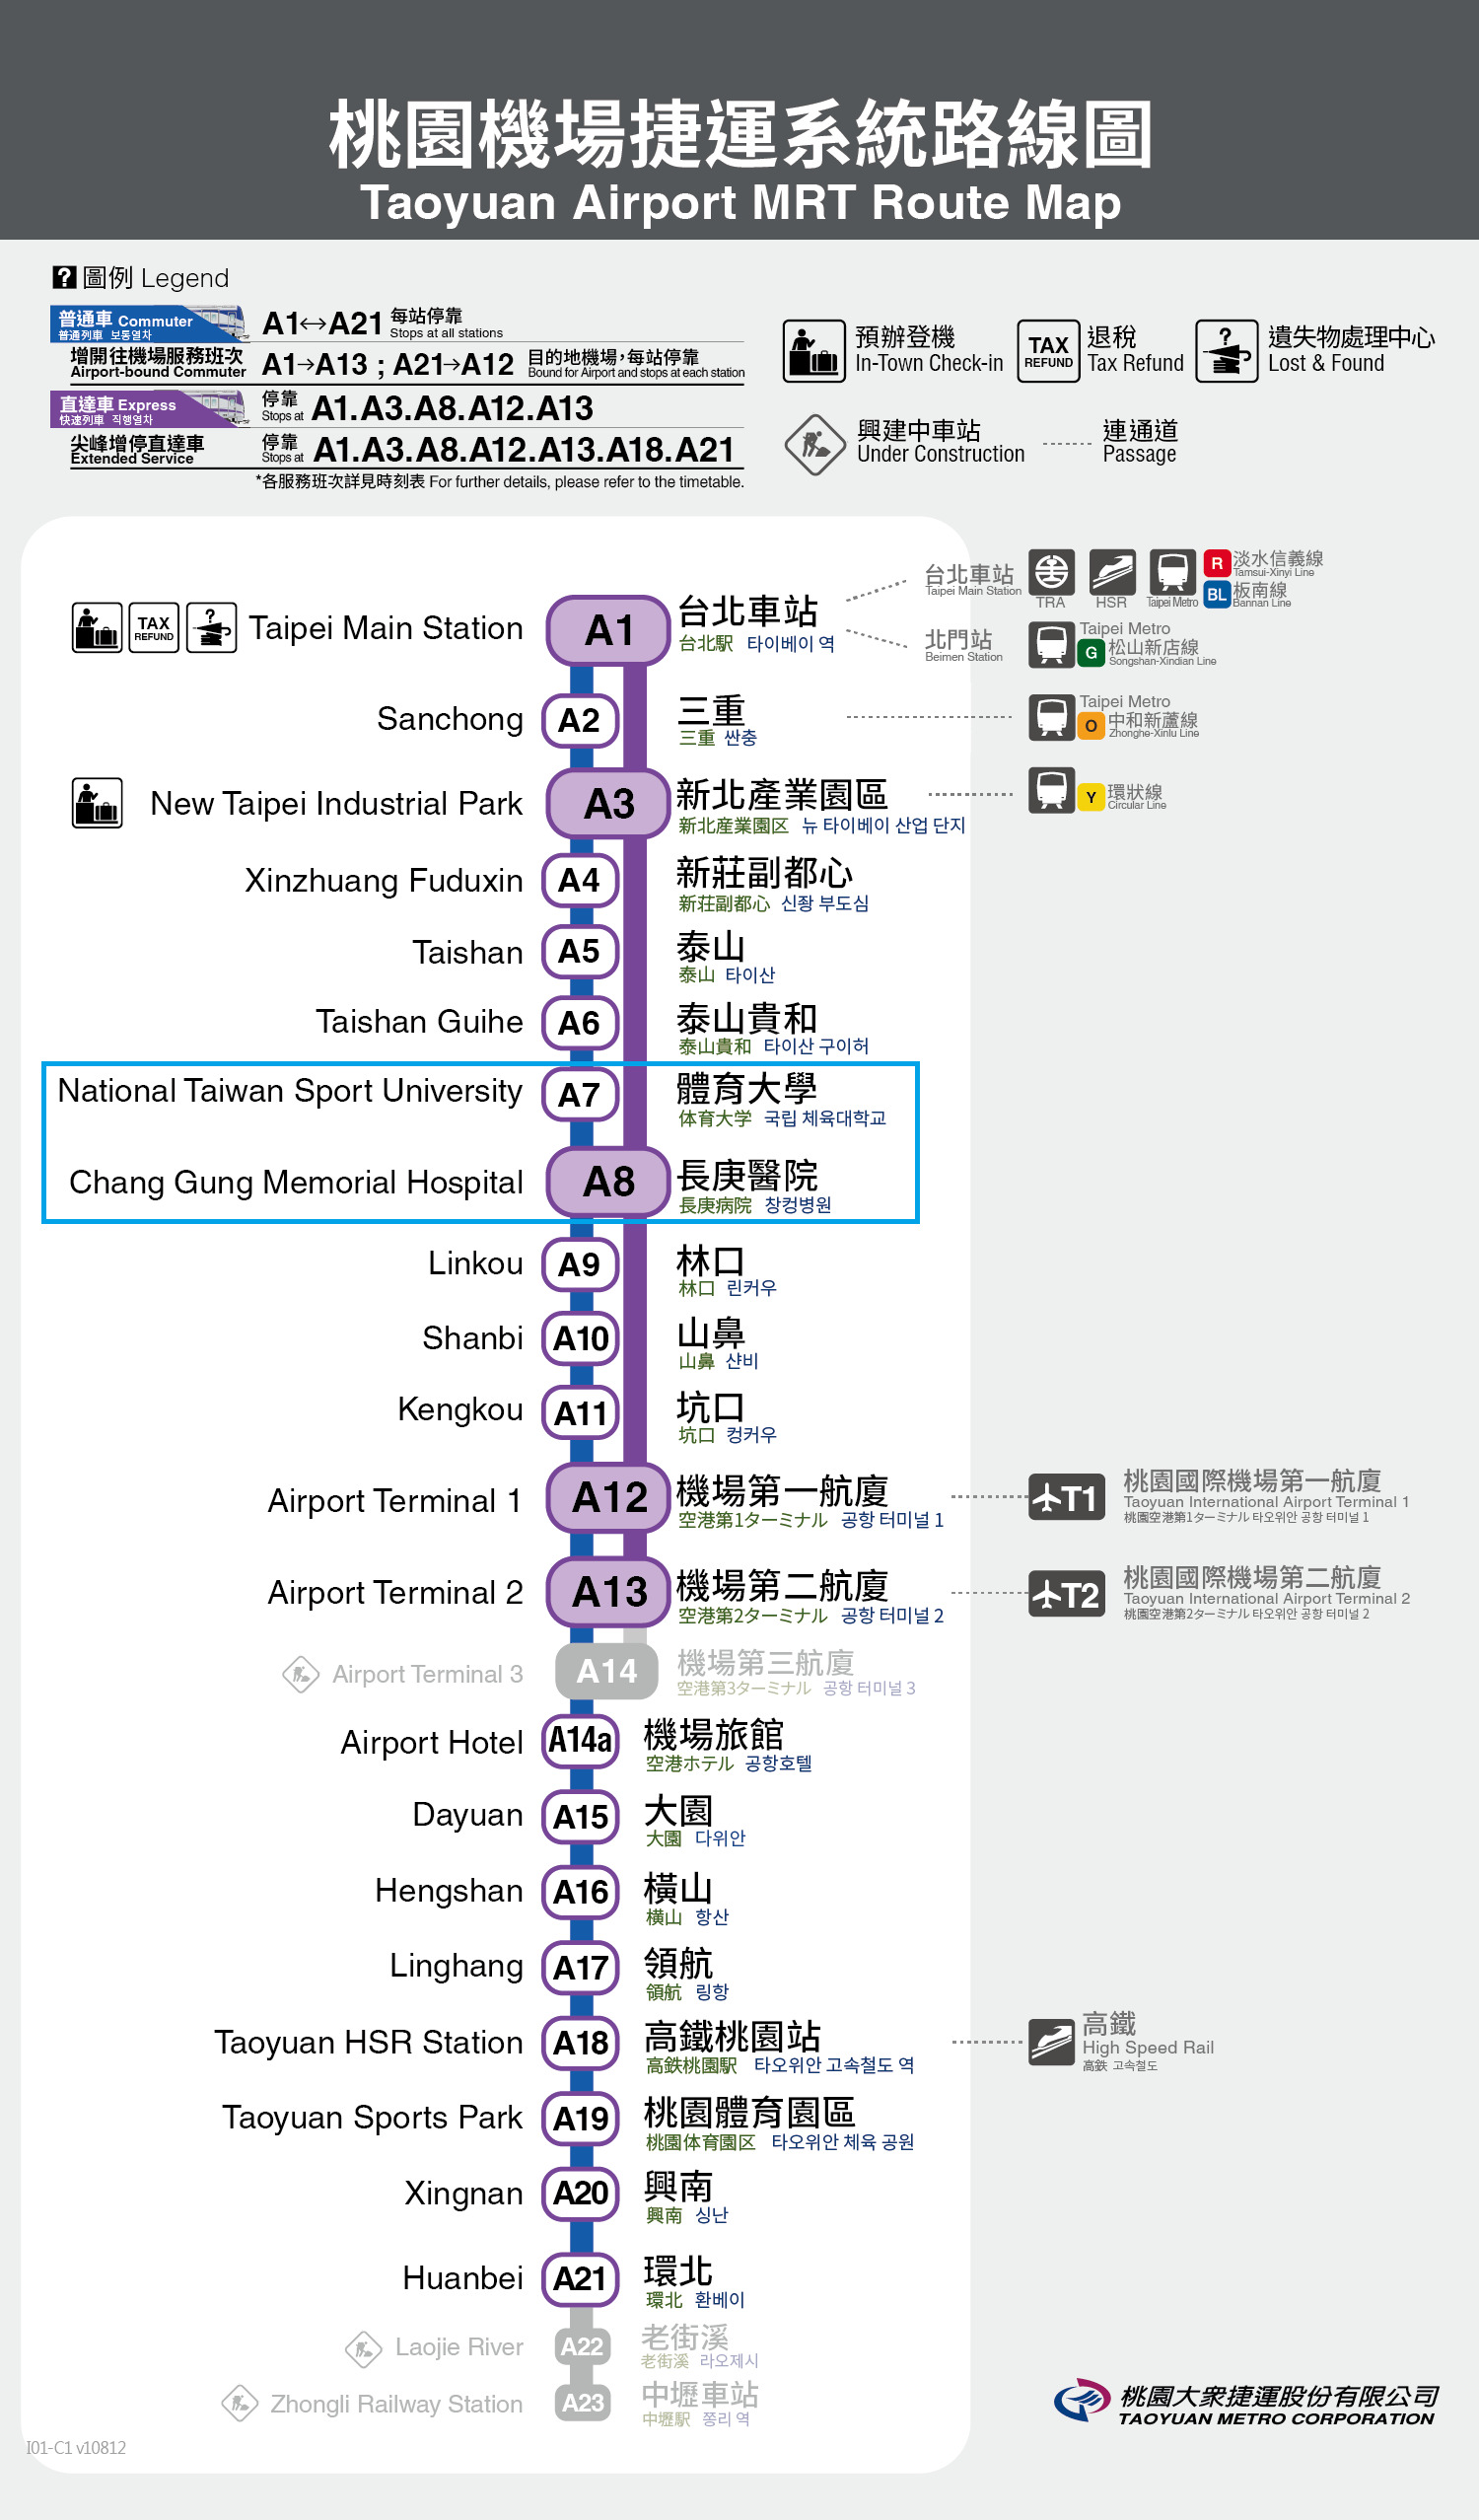 Taoyuan airport MRT Route Map